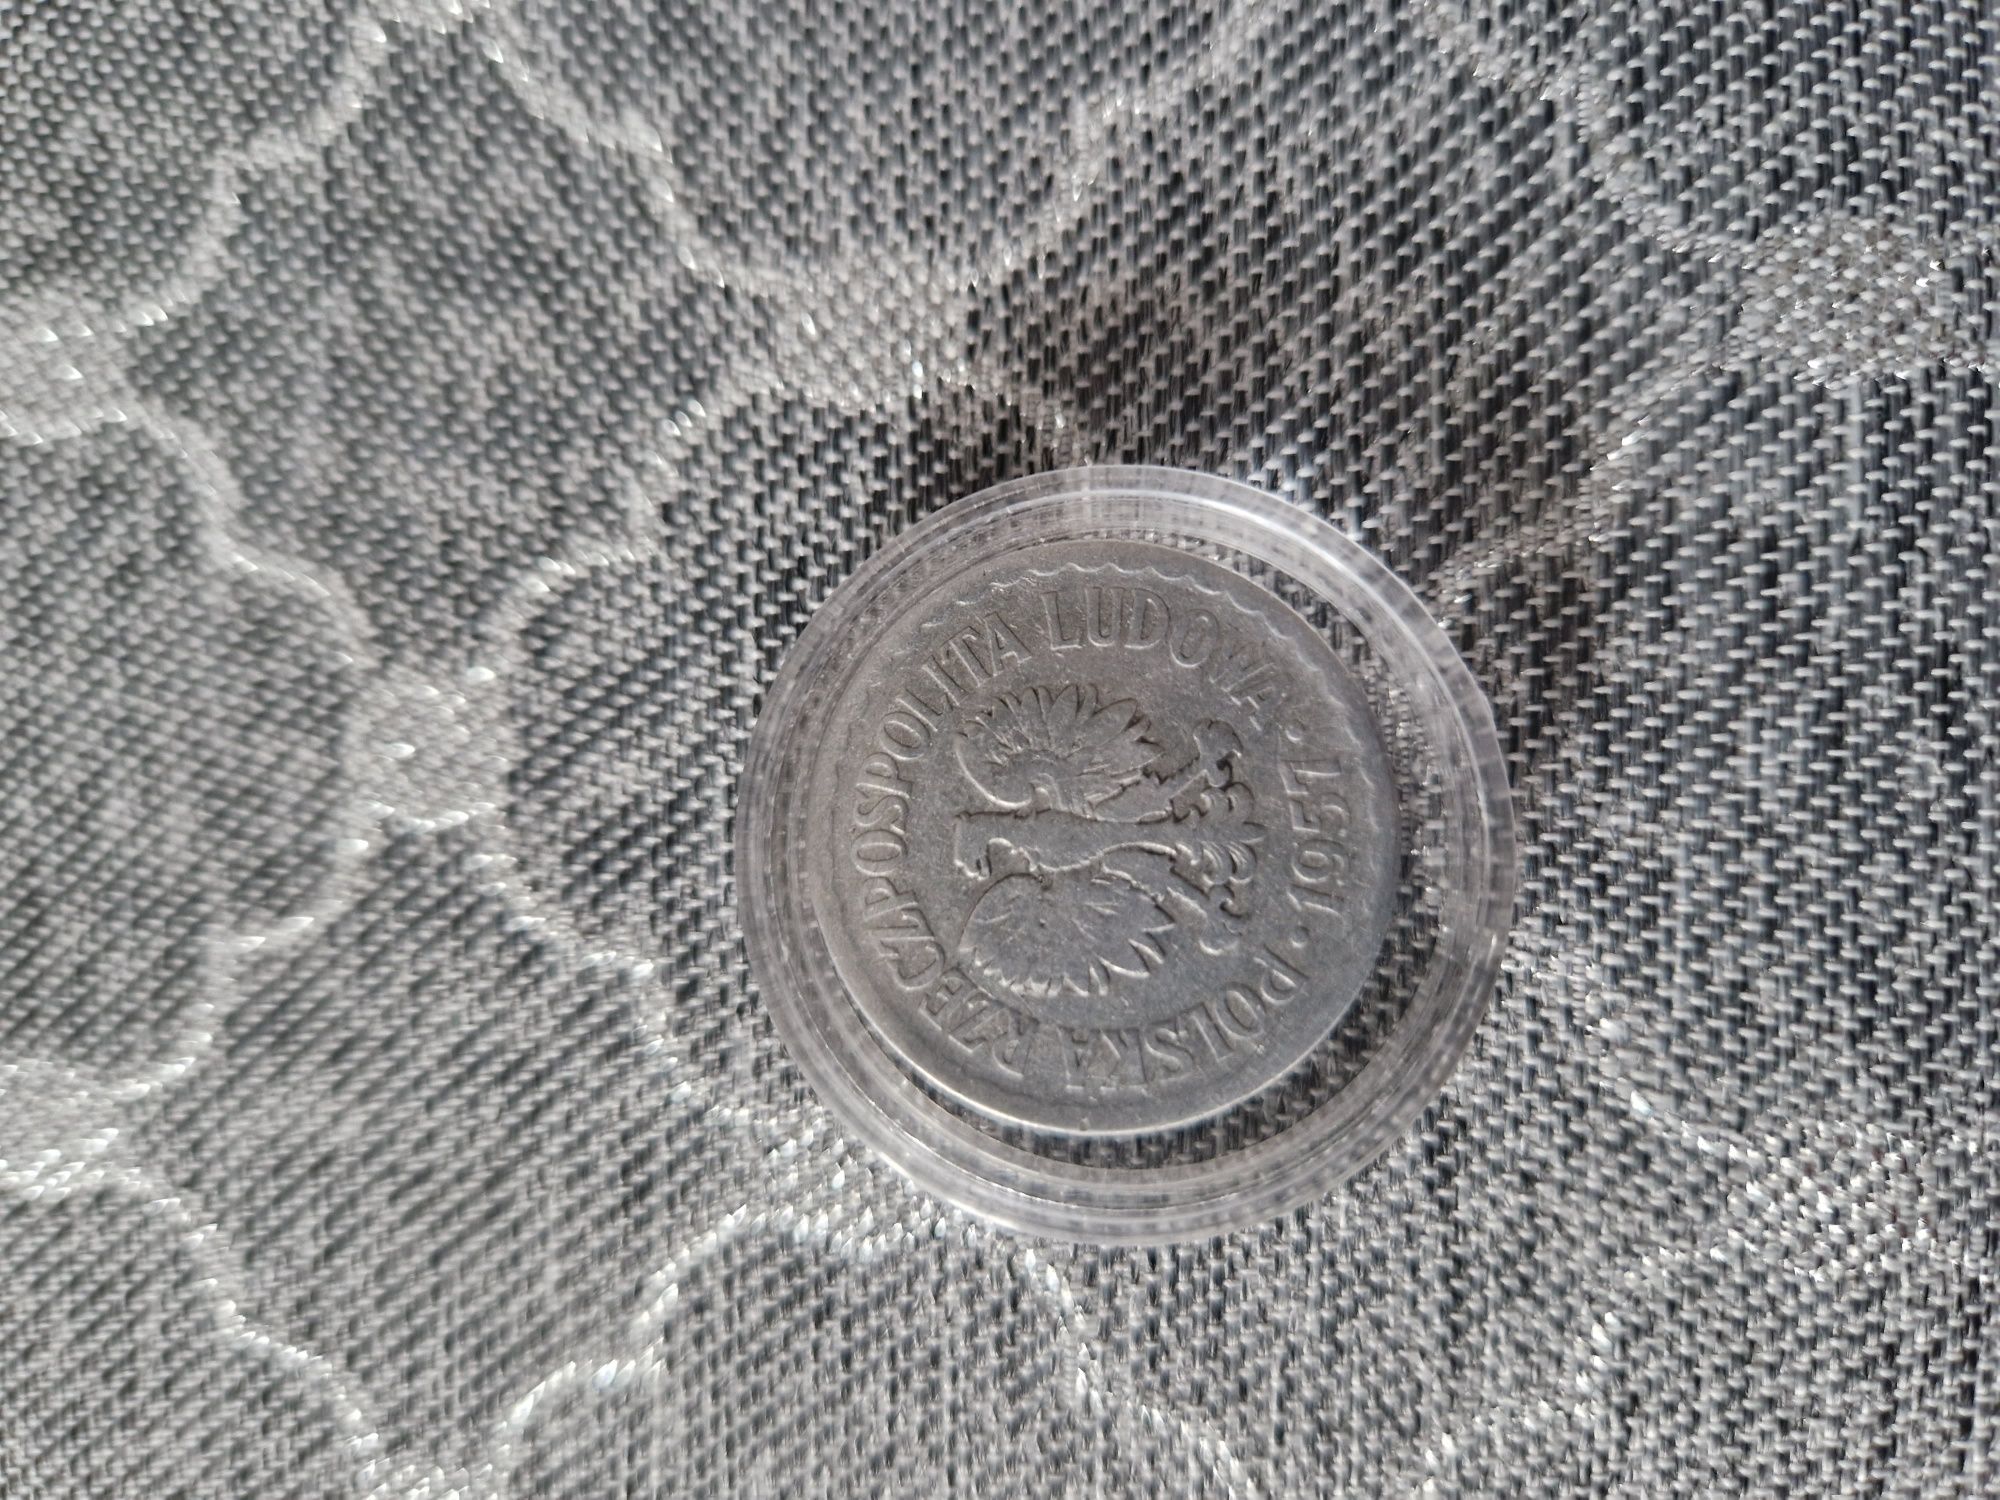 Na sprzedaż moneta 1 zł 1957